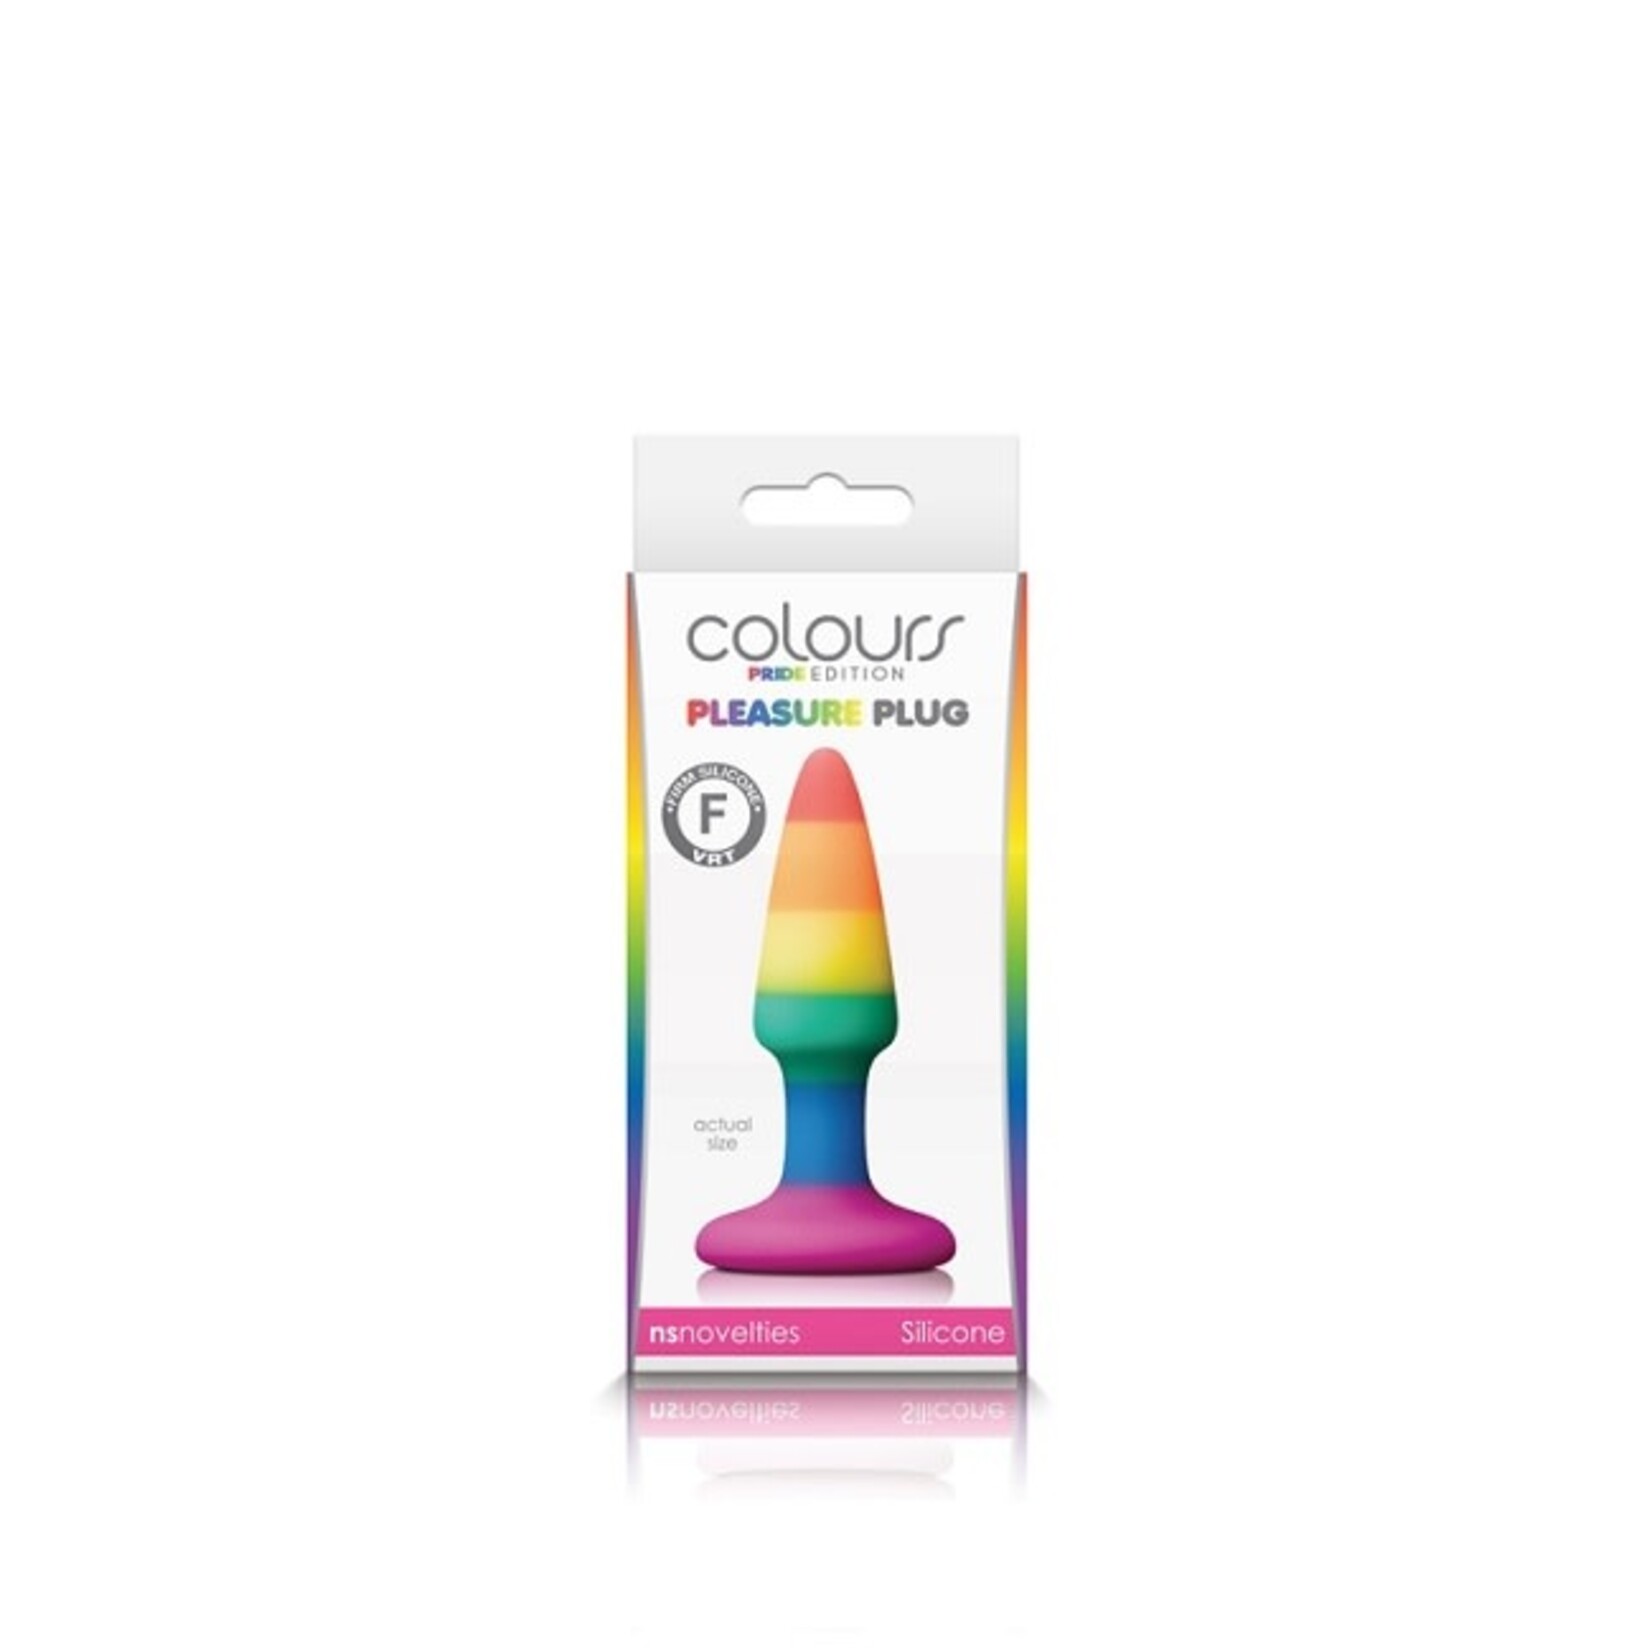 NS Novelties Colours - Pride Edition Pleasure Plug - Mini